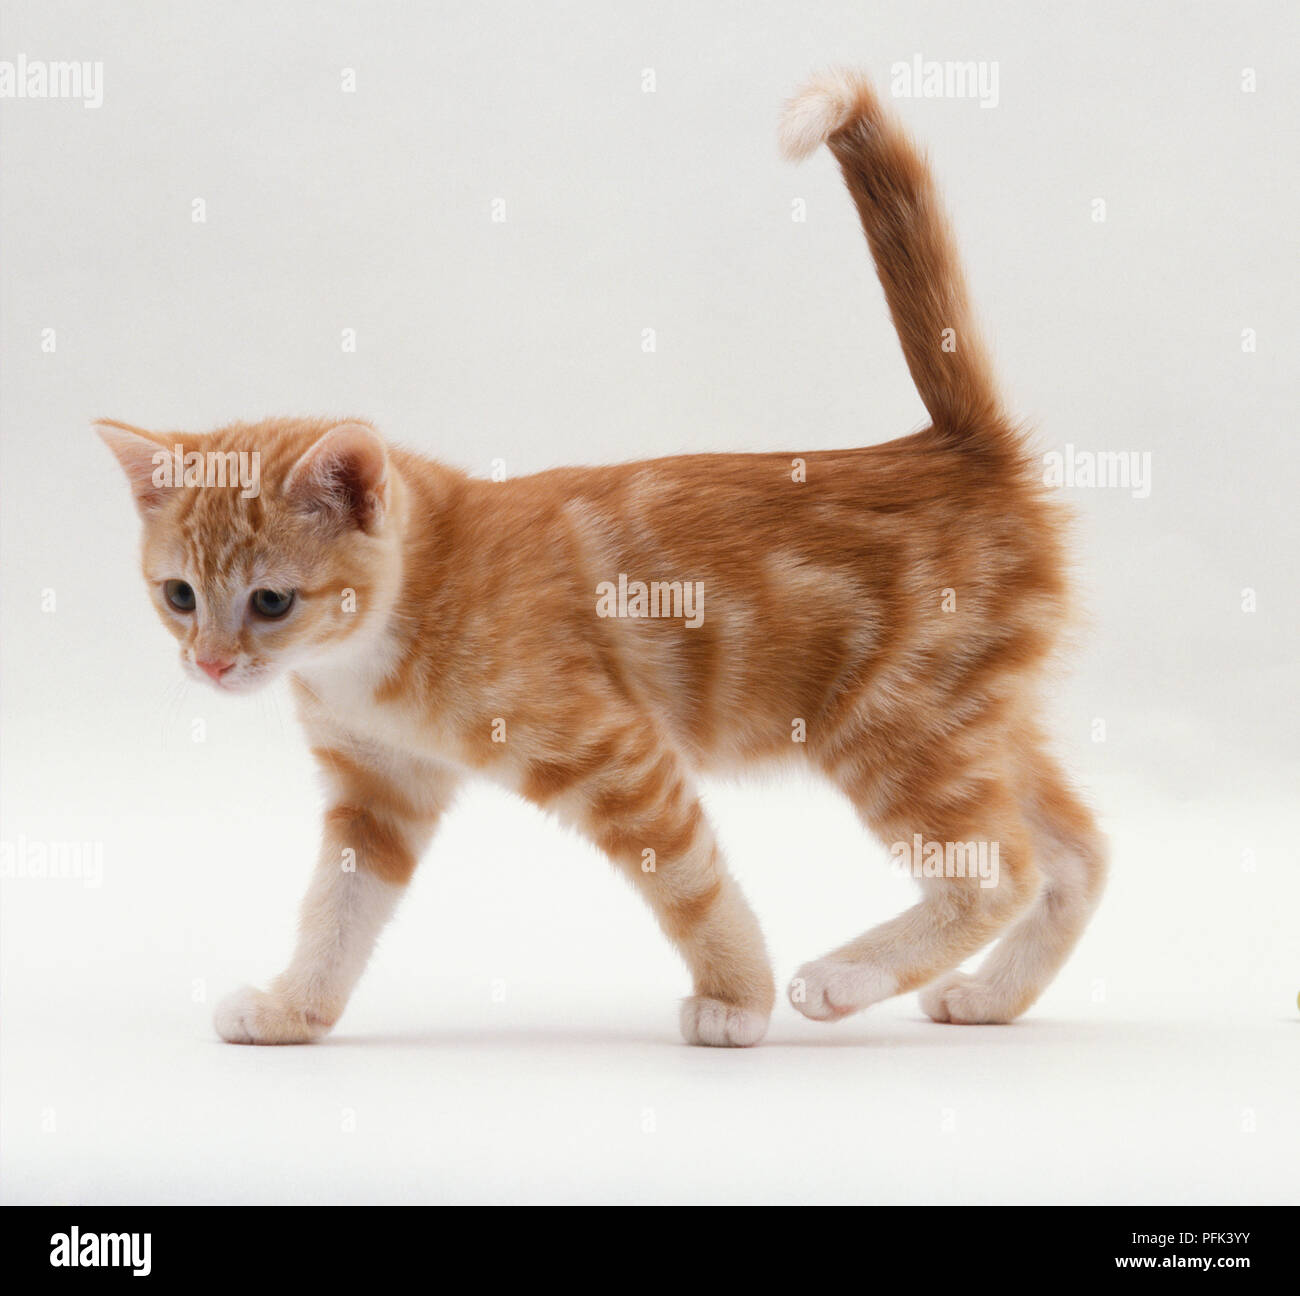 Lo zenzero tabby kitten camminare con il tail rialzato, vista laterale Foto Stock